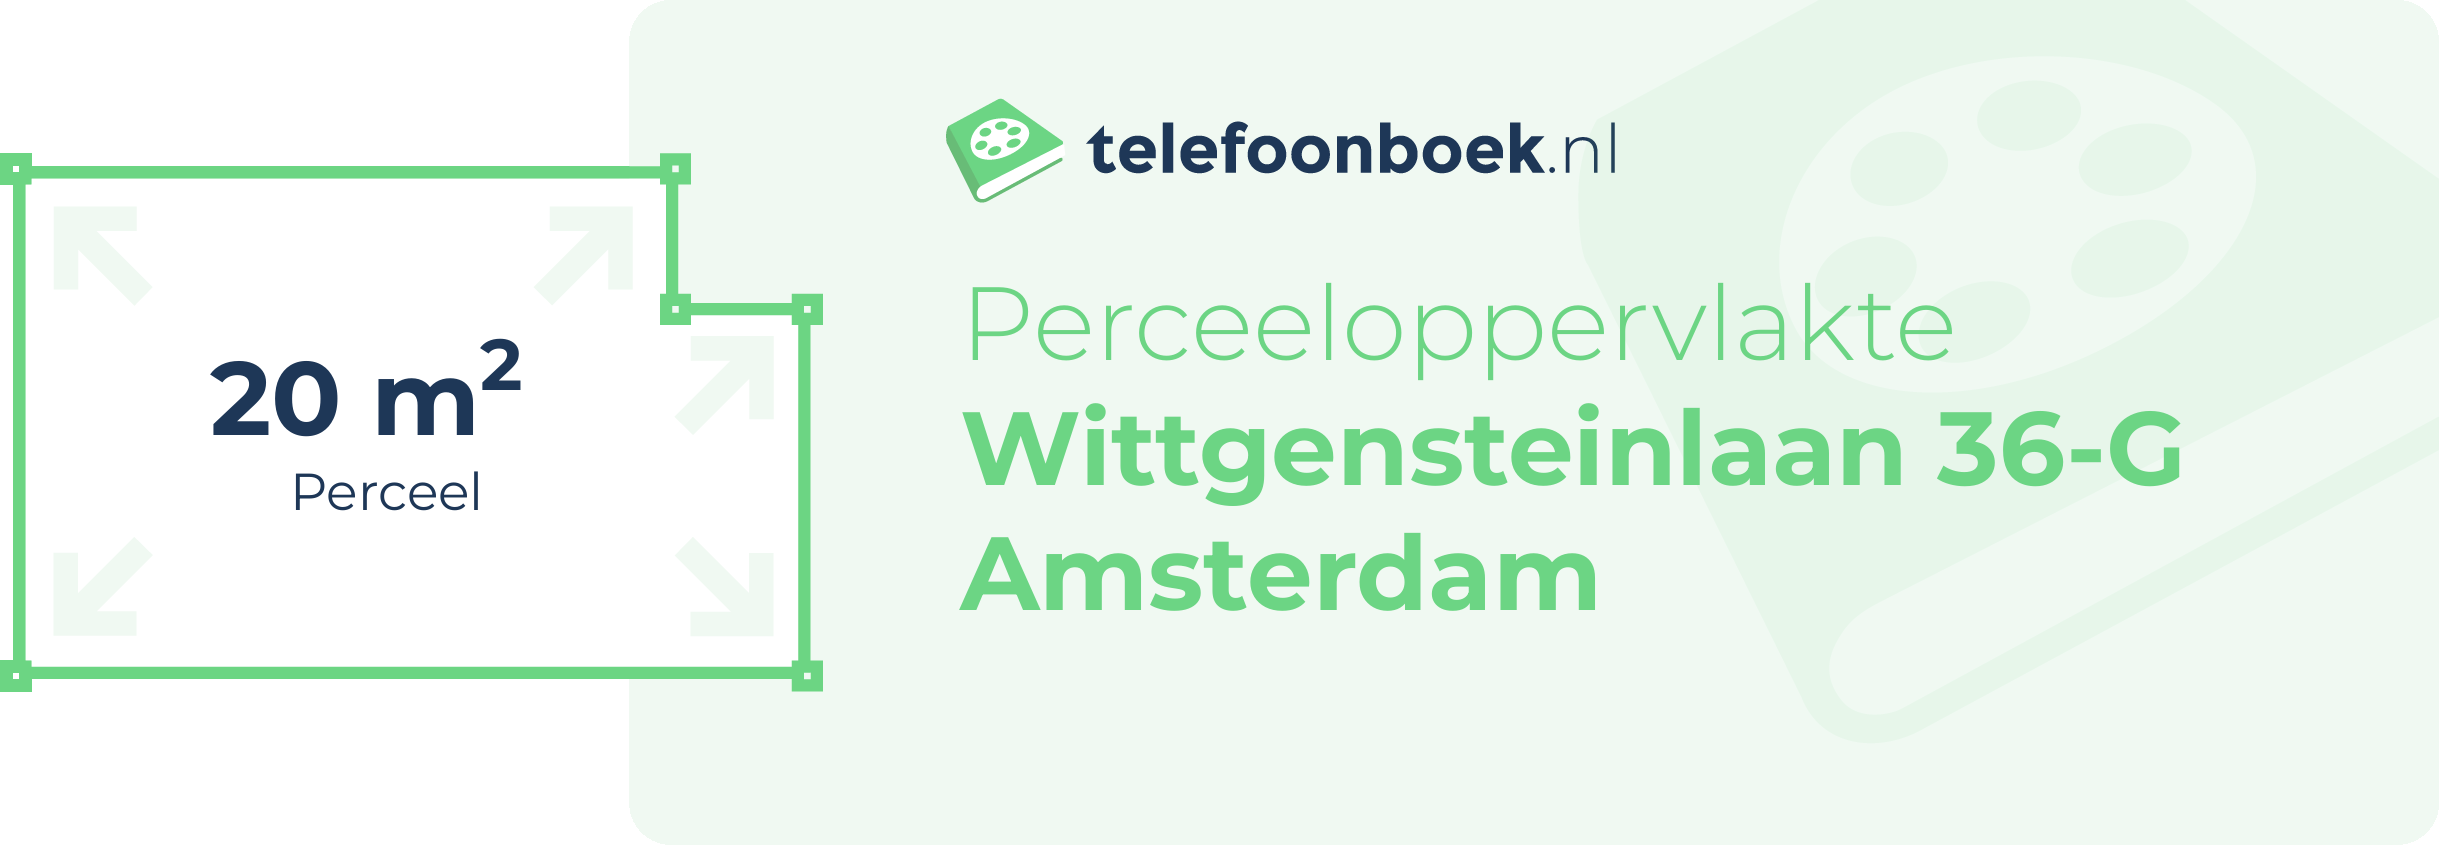 Perceeloppervlakte Wittgensteinlaan 36-G Amsterdam